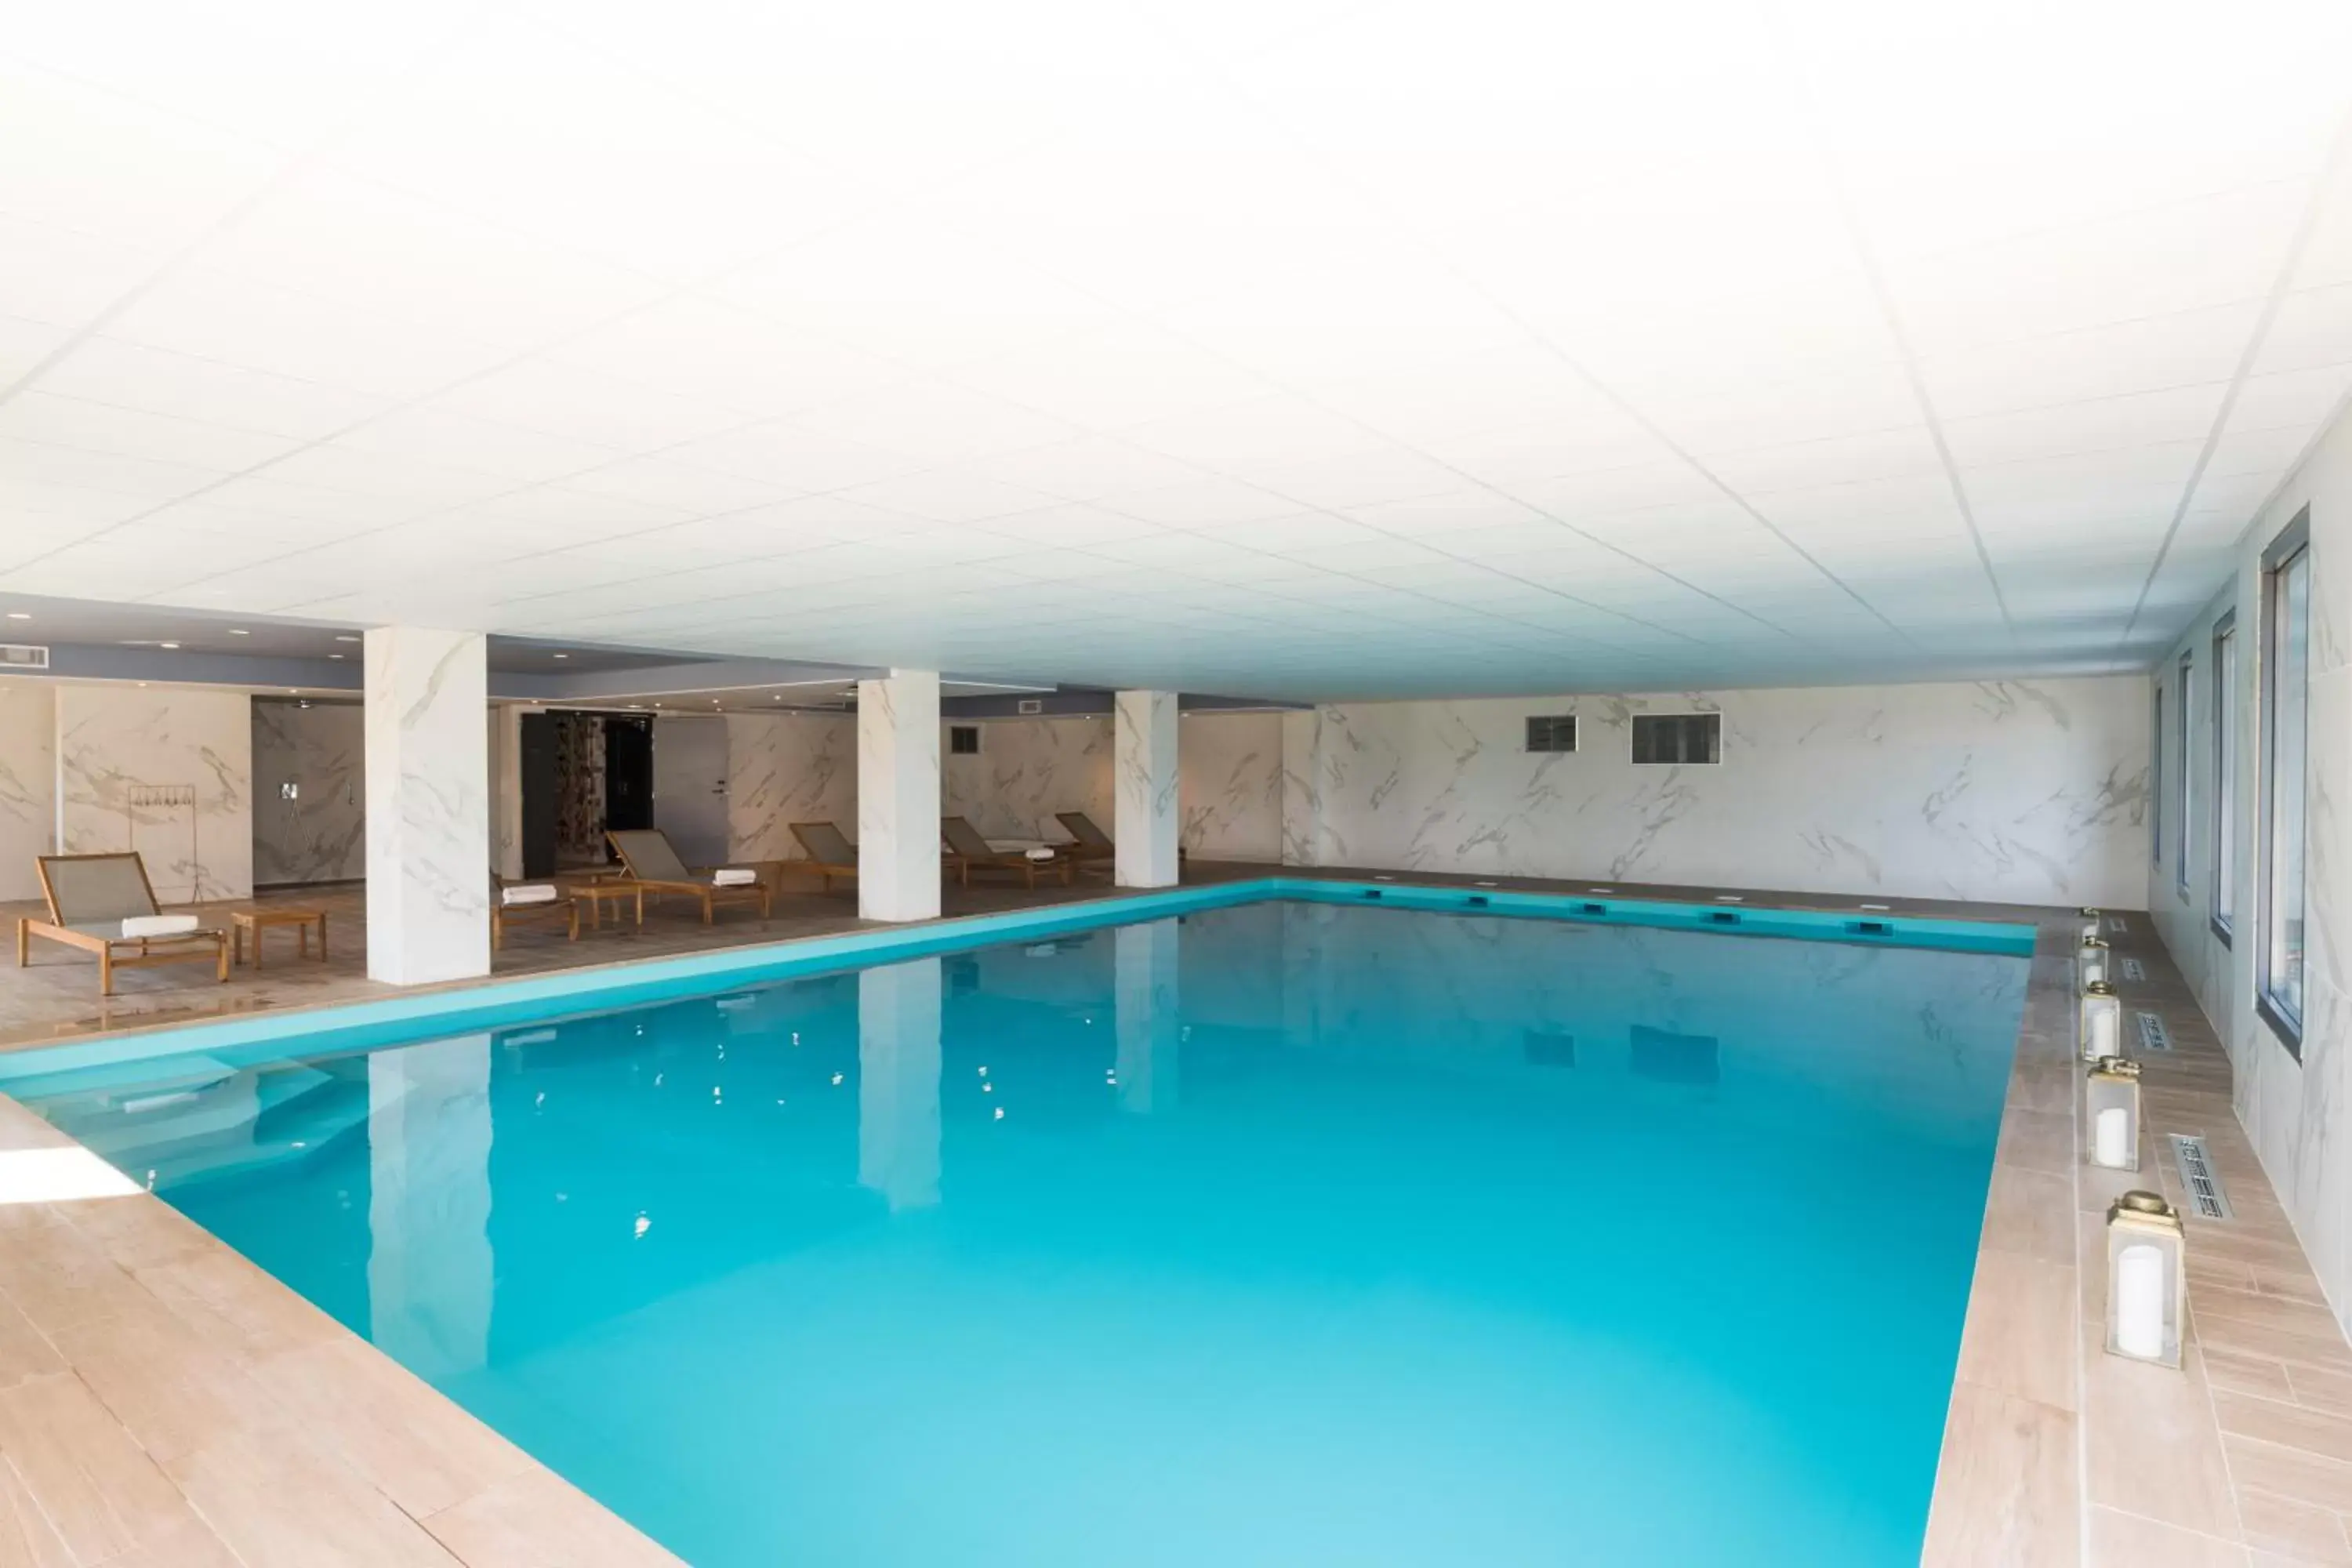 Spa and wellness centre/facilities, Swimming Pool in Mercure Hotel & Spa Bastia Biguglia